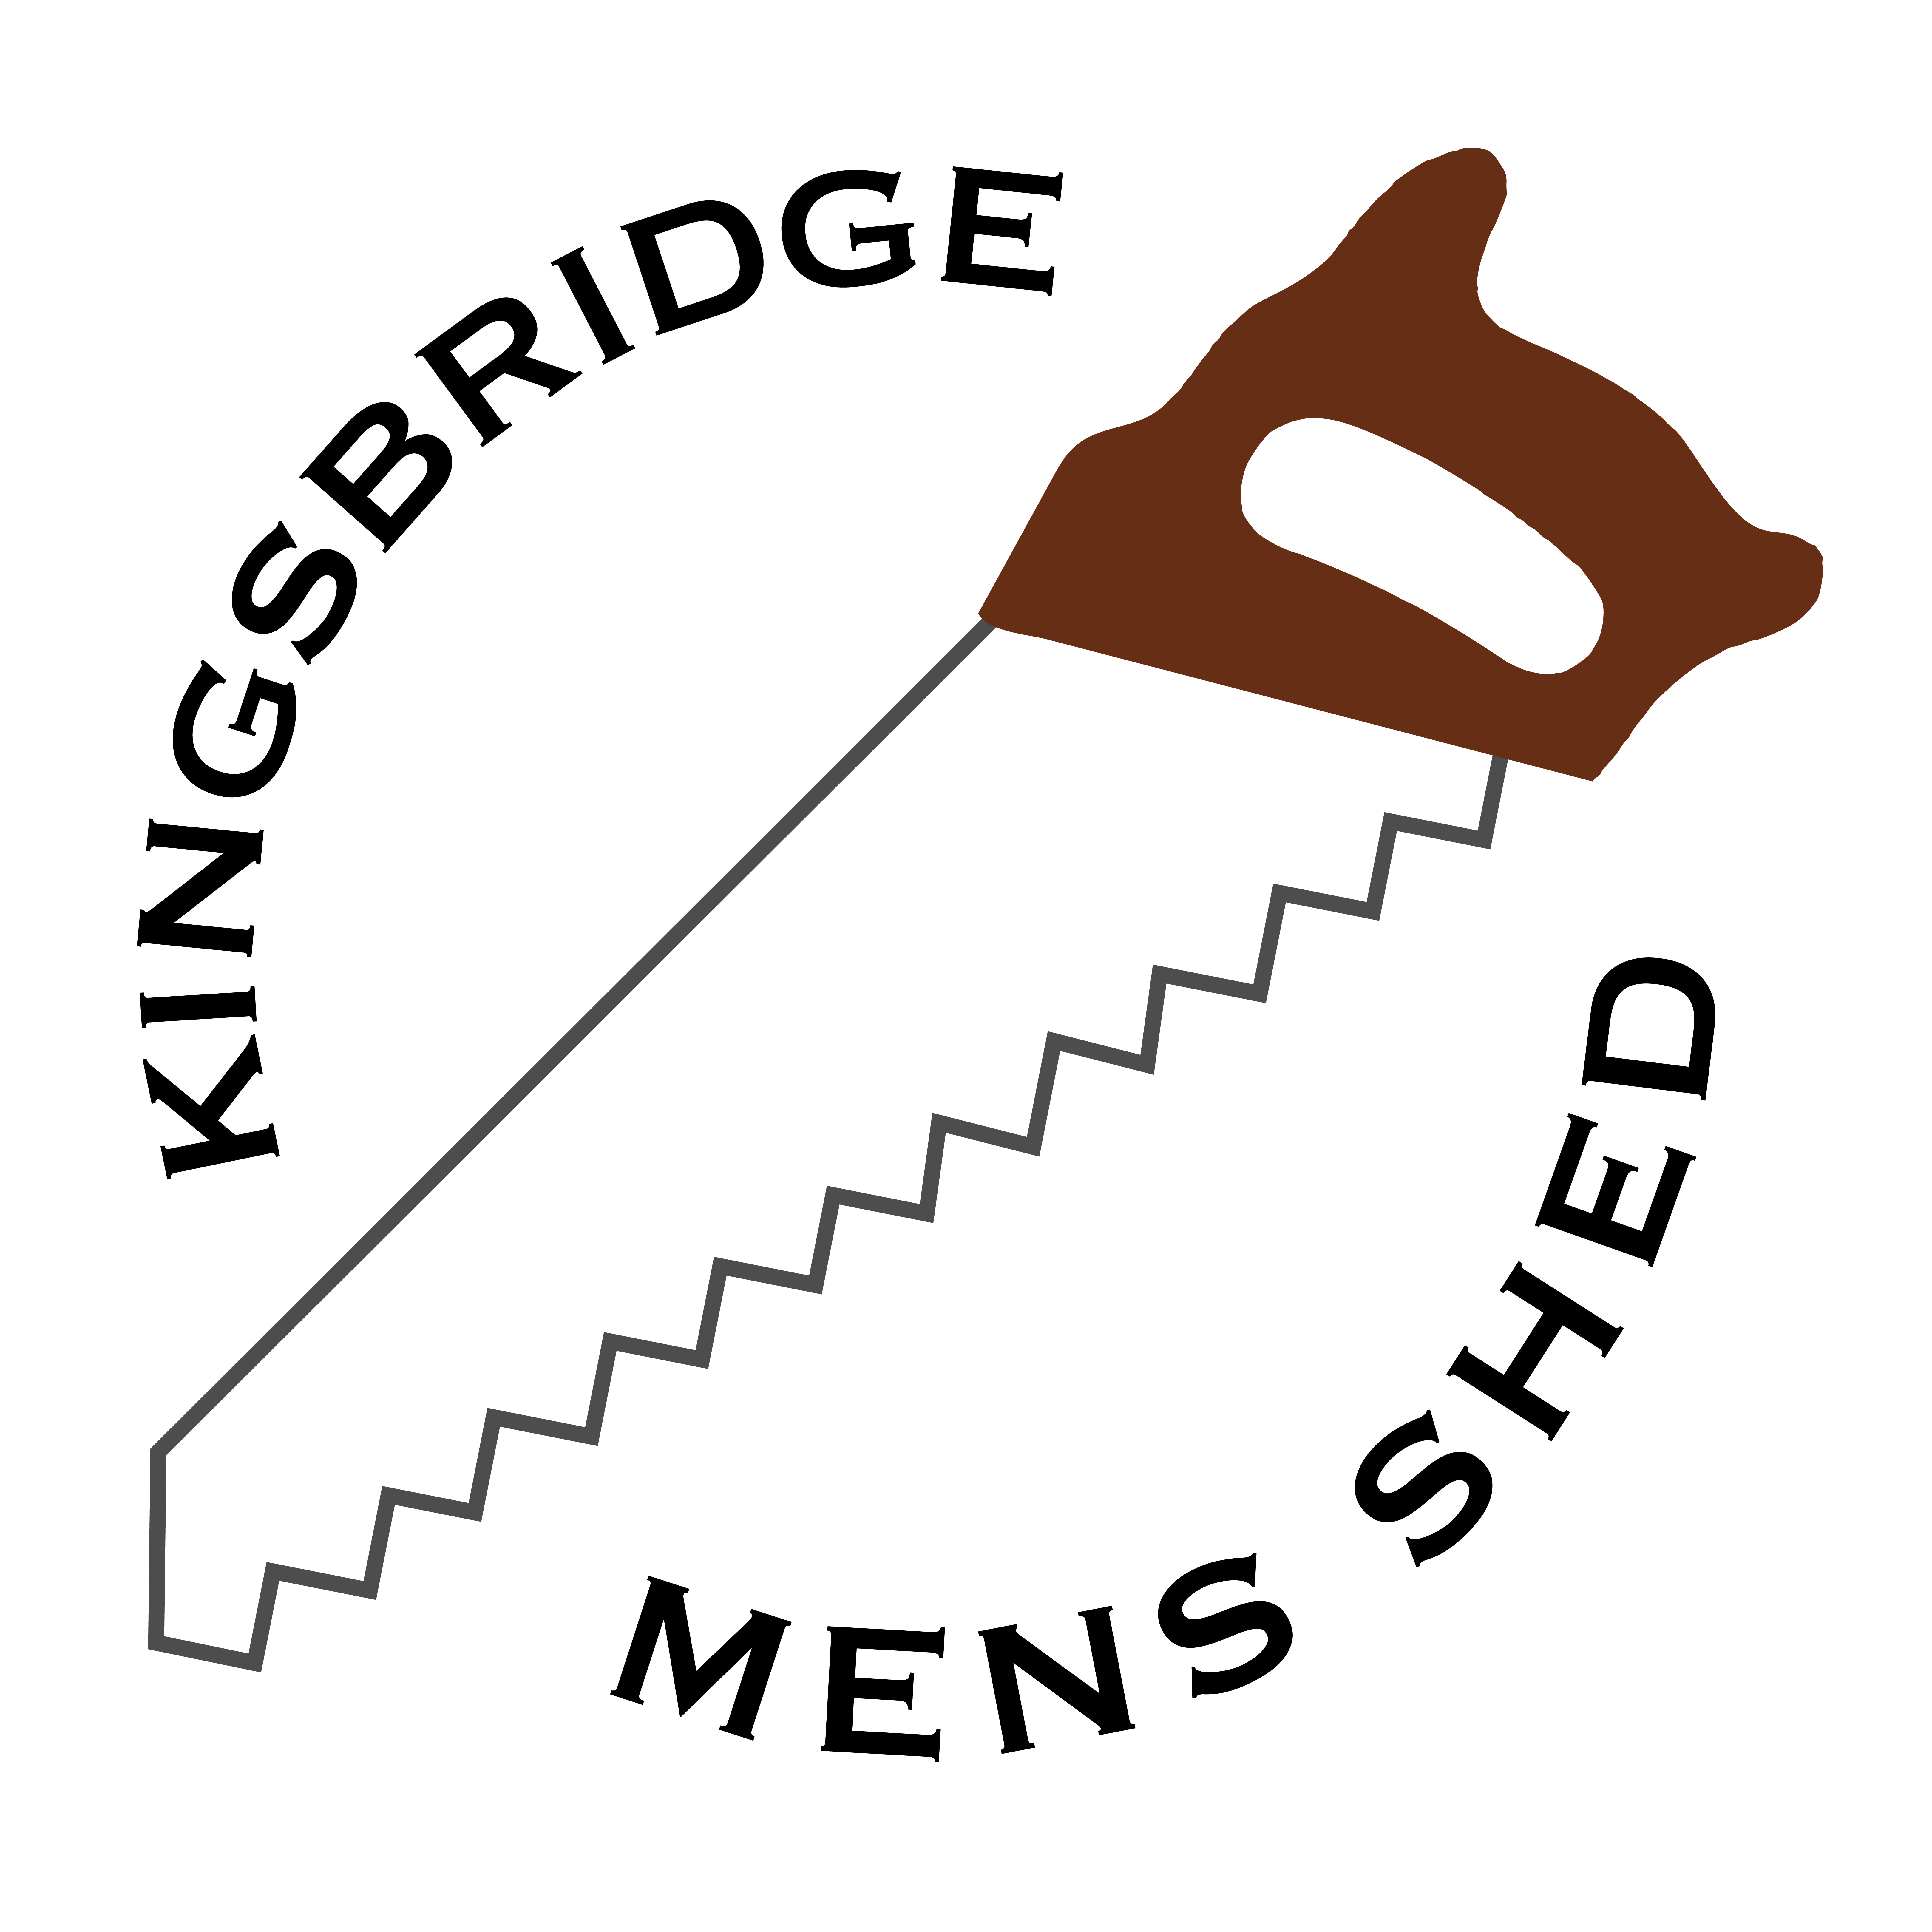 Kingsbridge Mens Shed